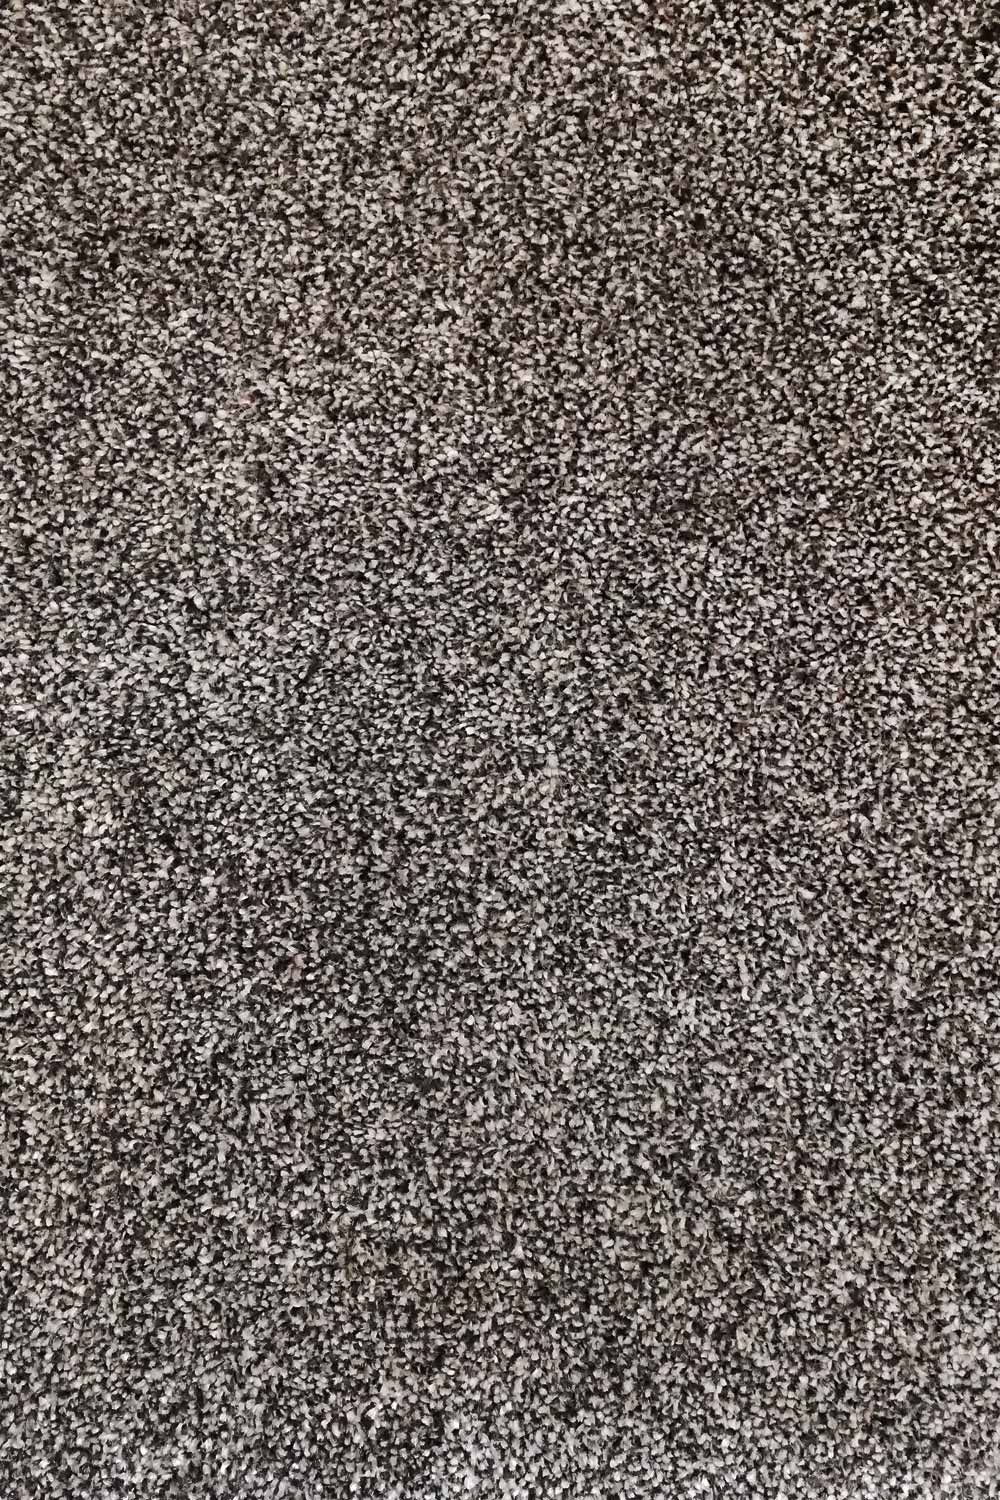 Metrážny koberec Dalesman 71 400 cm